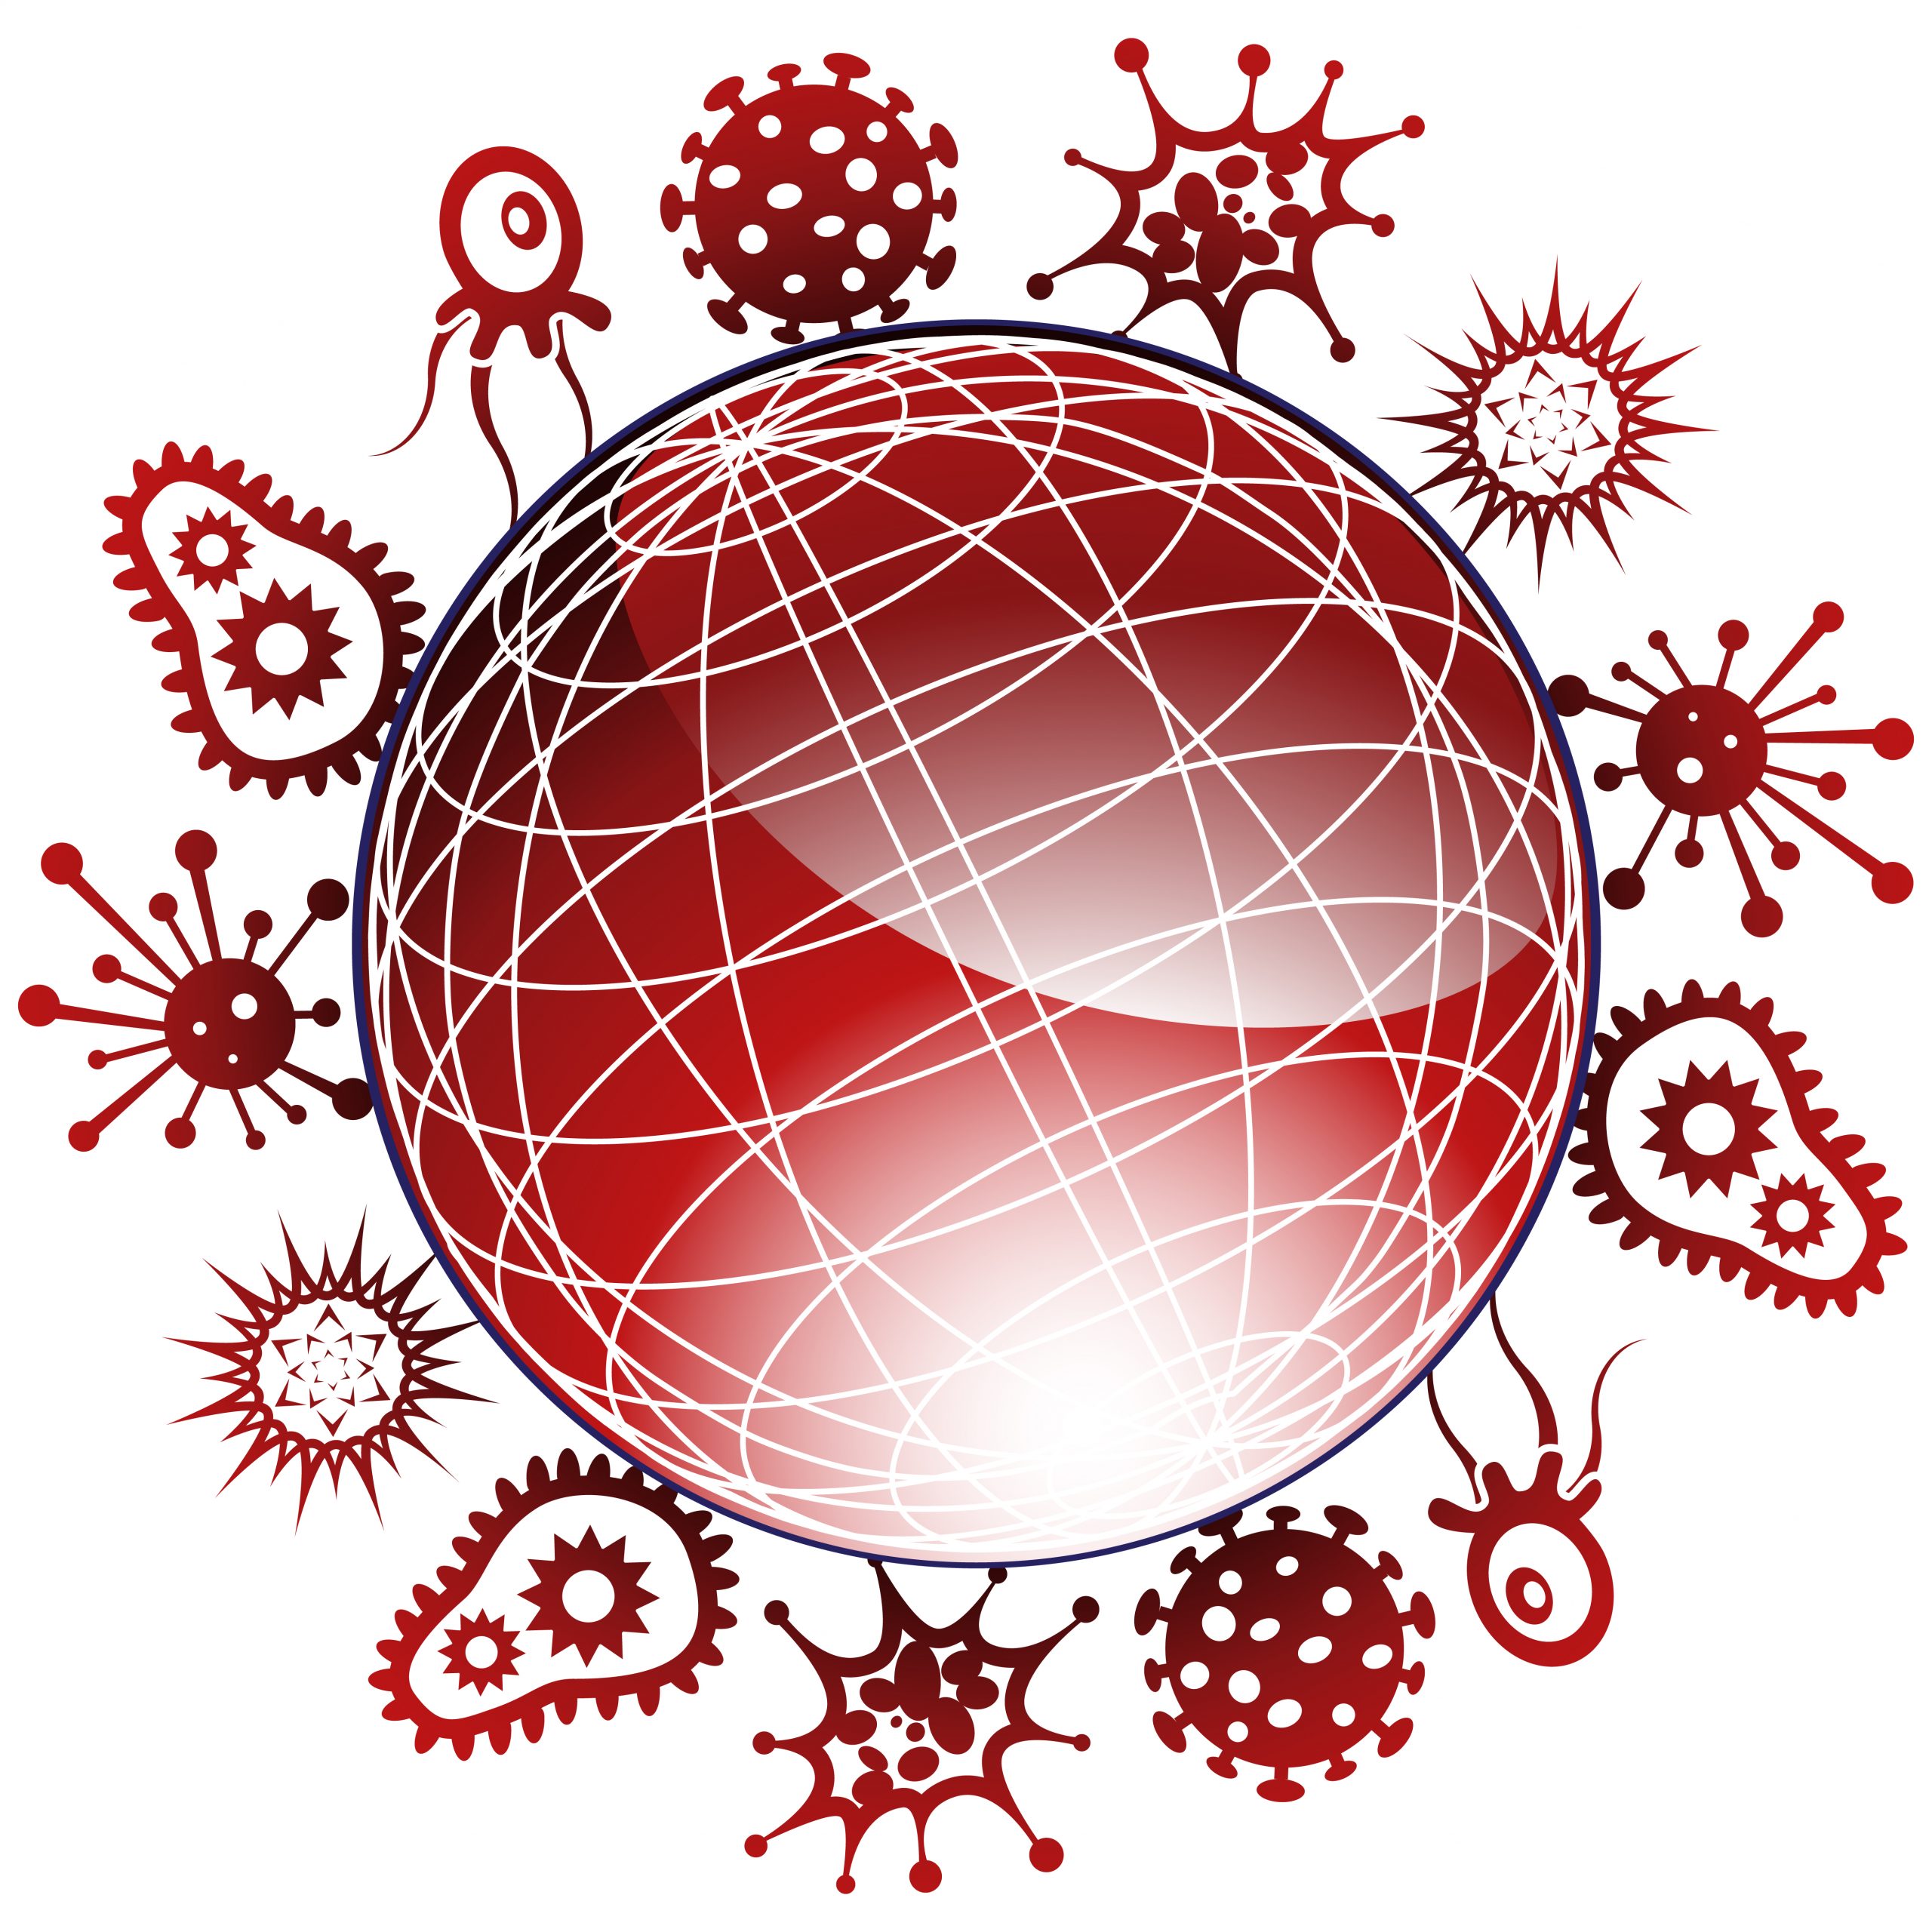 https://depositphotos.com/3989836/stock-illustration-global-viruses-3d.html